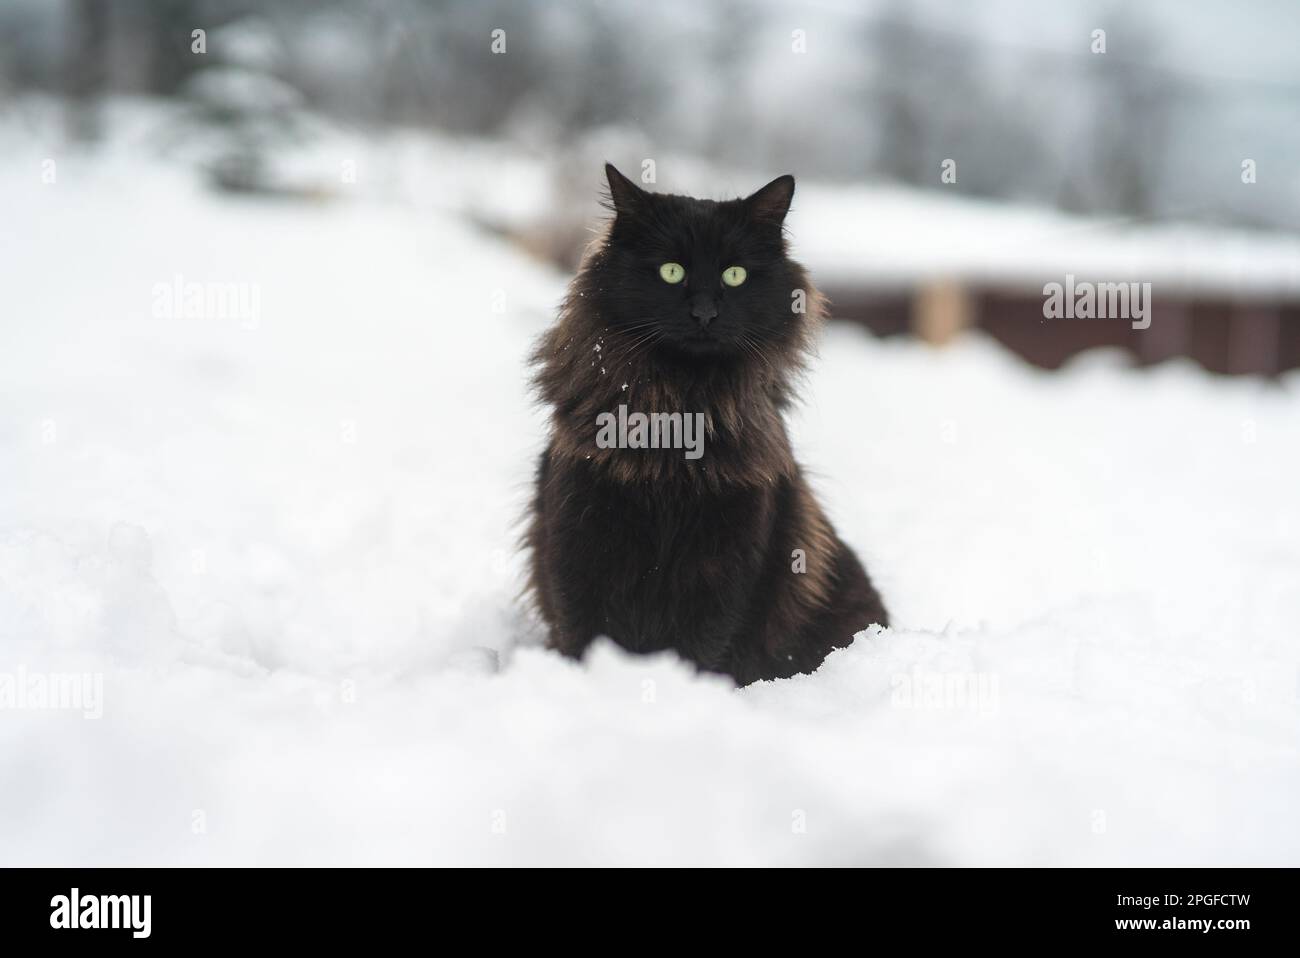 Gatto nero nella neve con occhi gialli Foto Stock